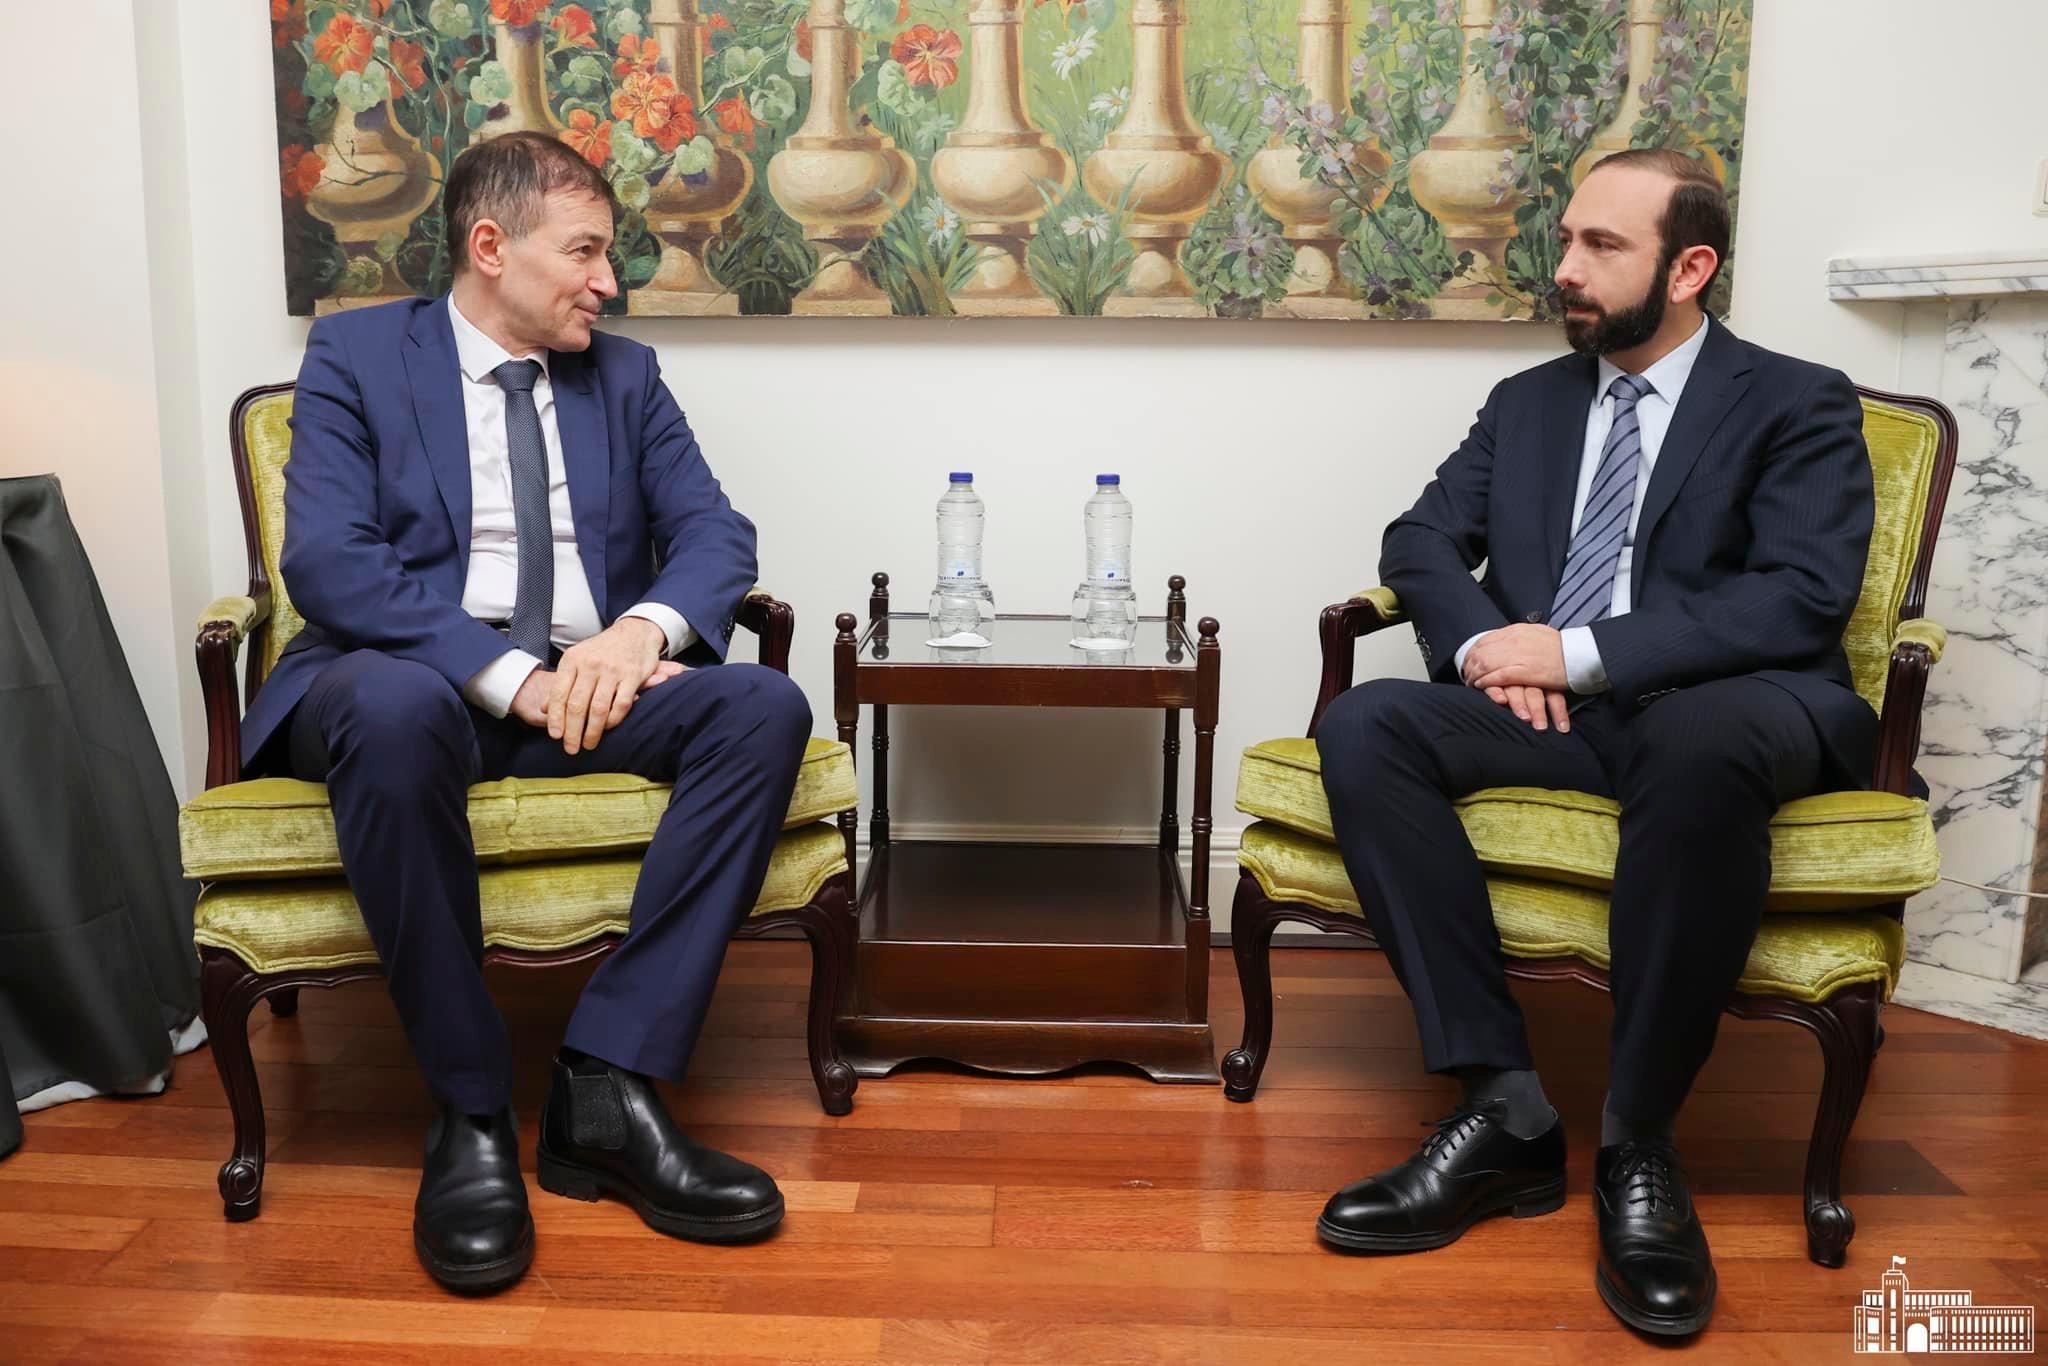 Глава МИД высоко оценил решение Совета ЕС о размещении мониторинговой миссии в Армении